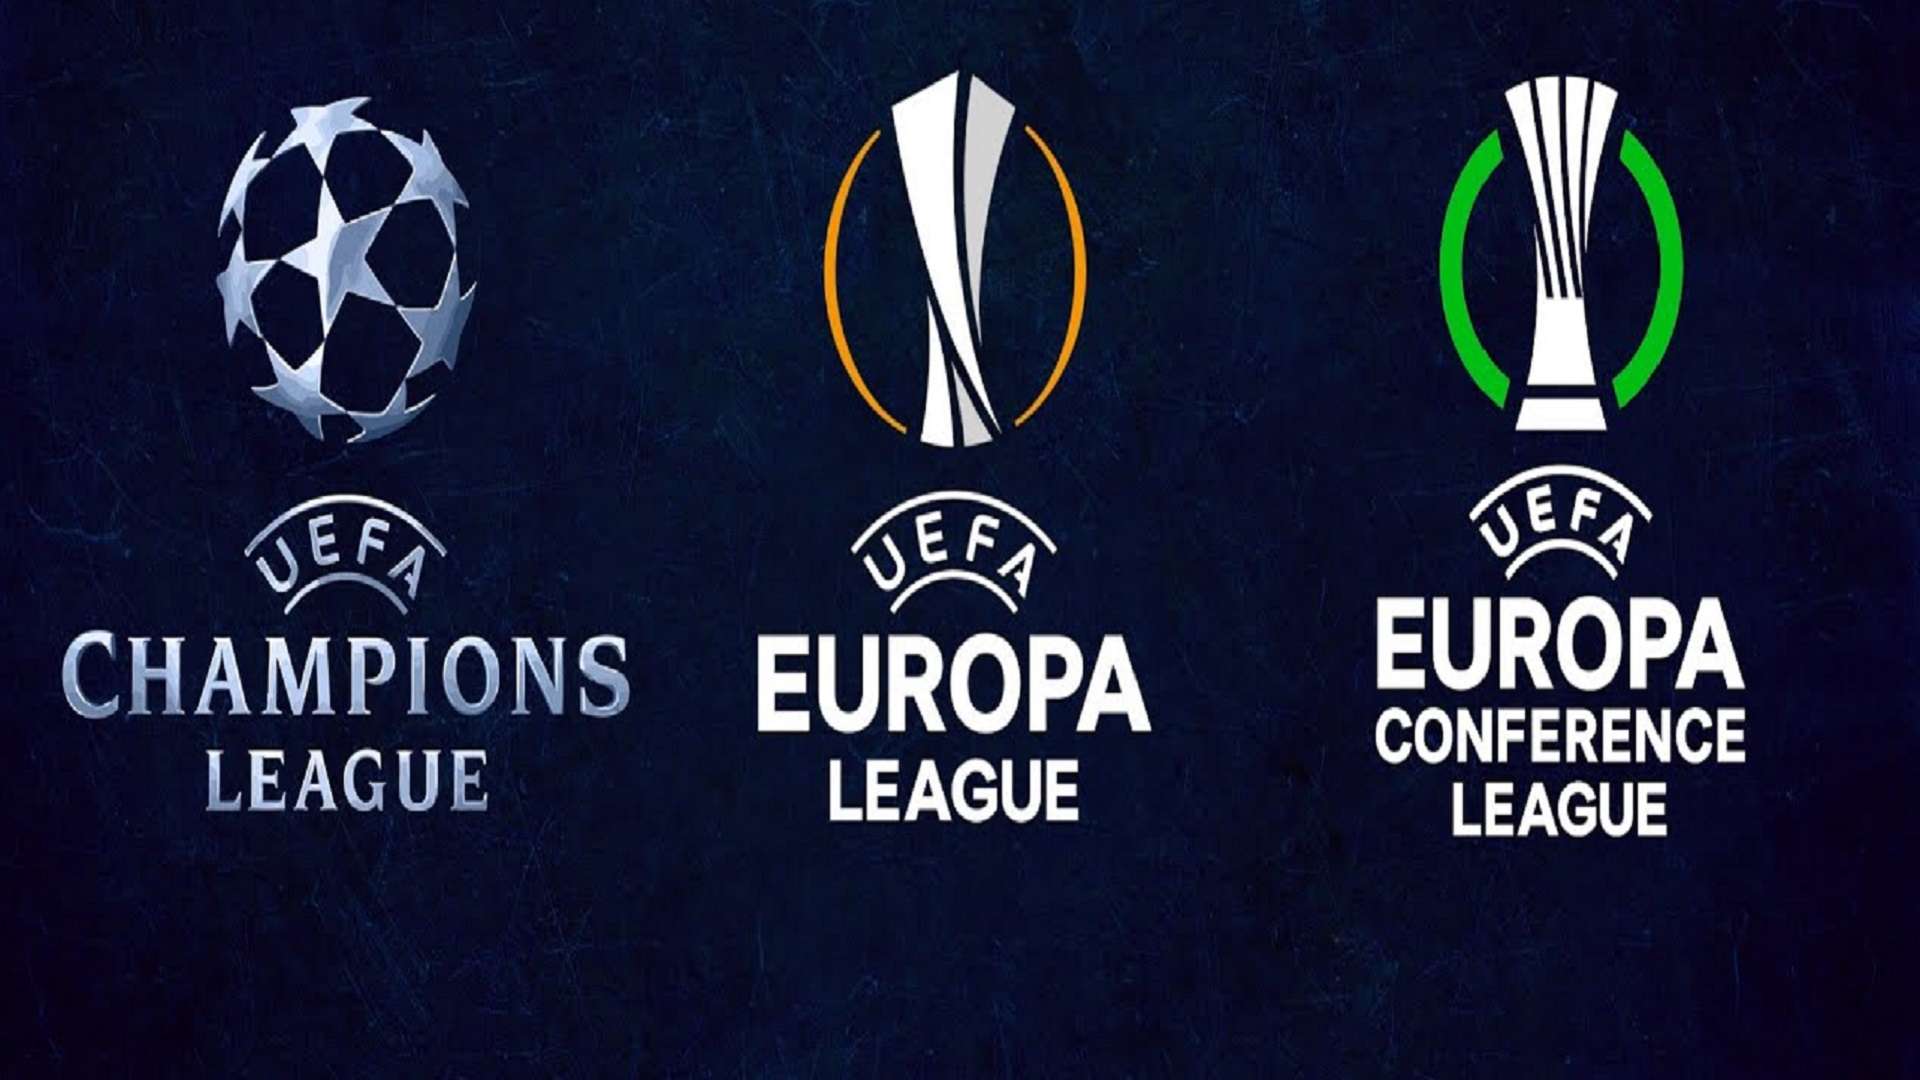 Conference League, Europa League, Champions League